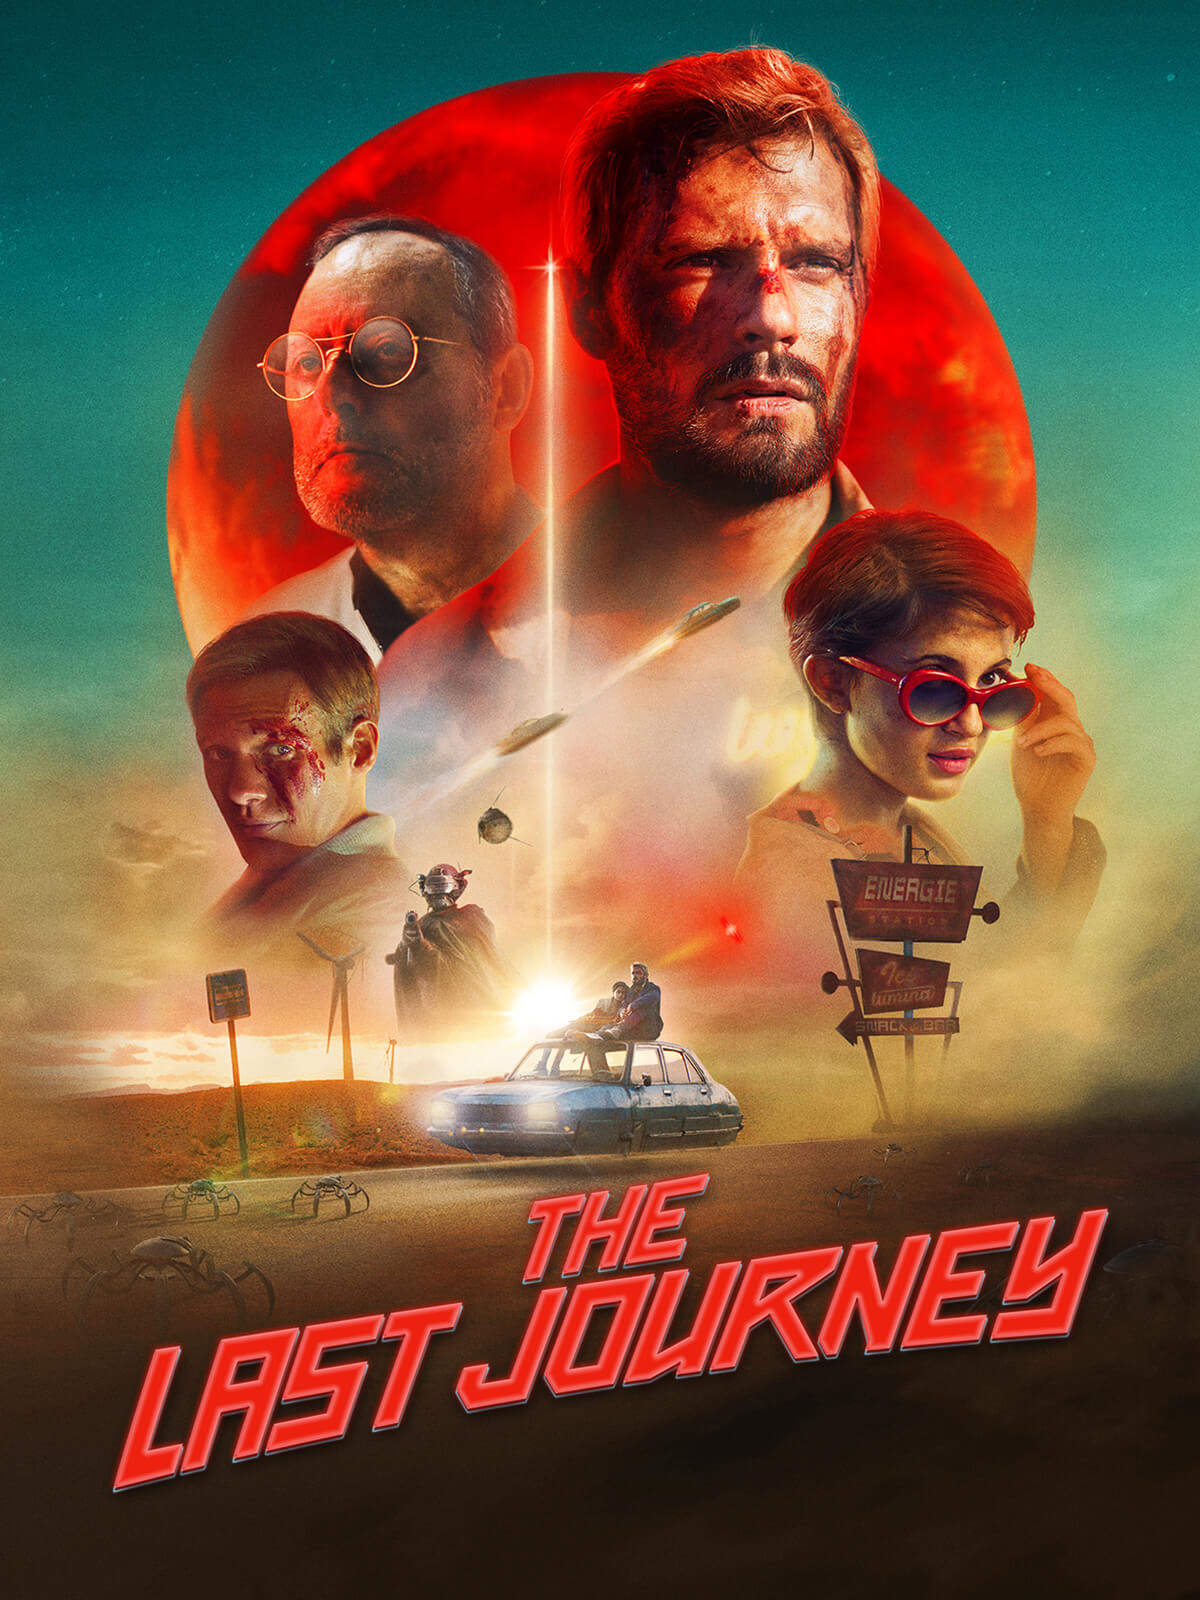 last journey movie details